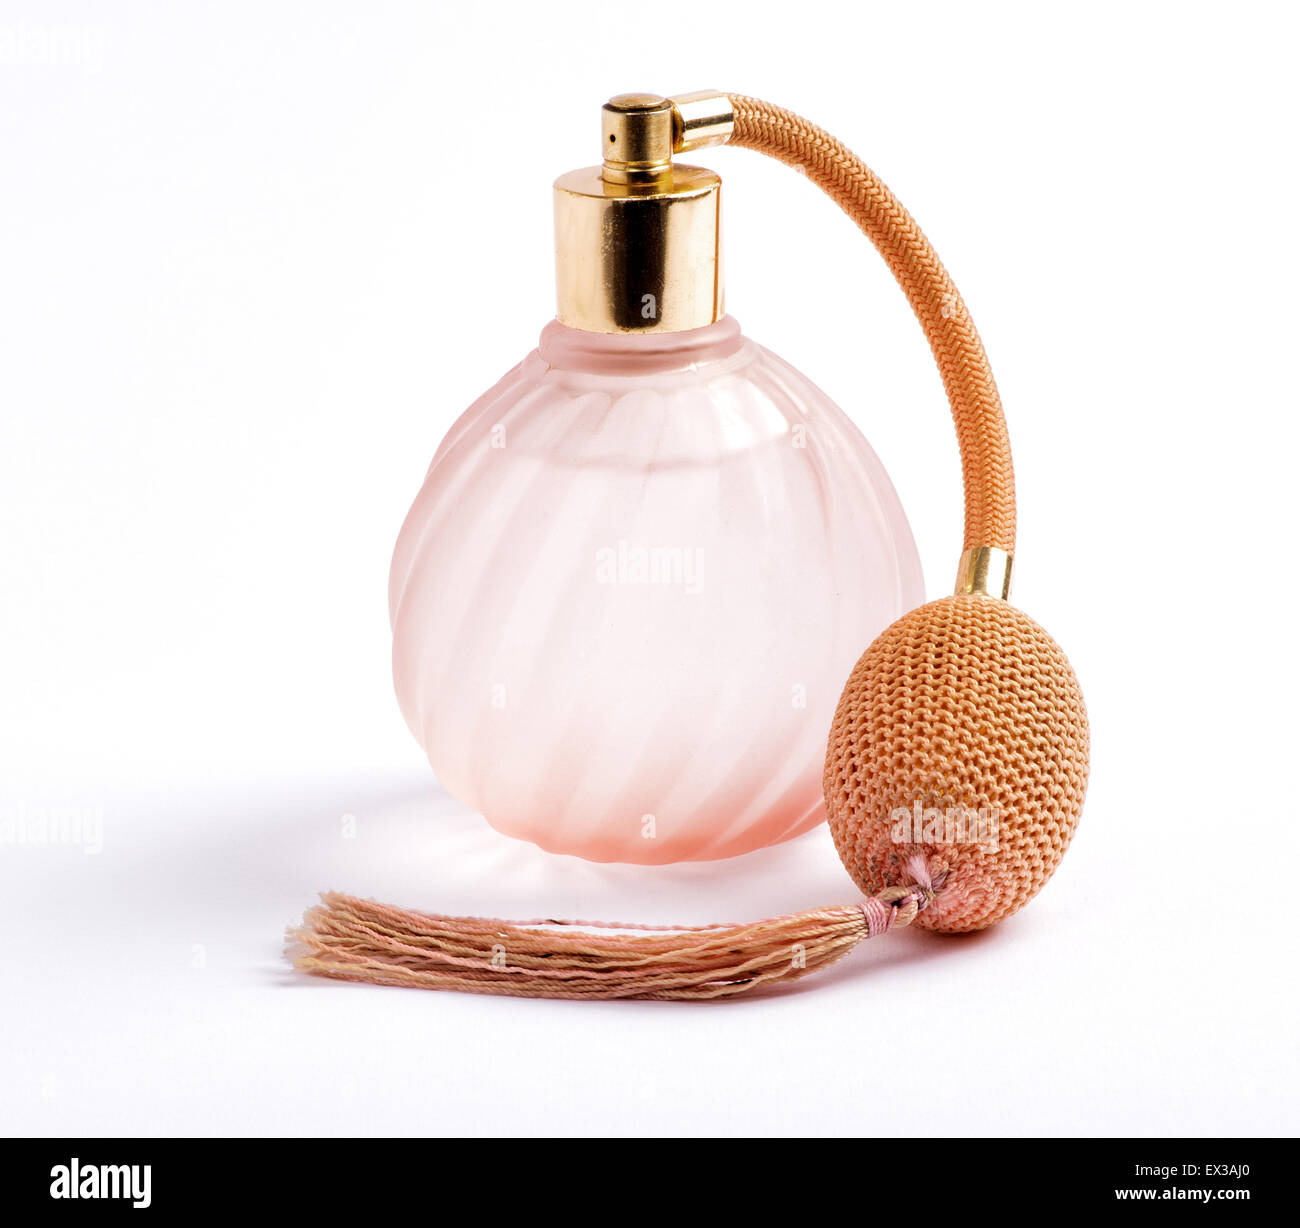 Klassische Parfüm-Flasche mit einem Zerstäuber Pumpe für den Duft mit angehängten lange Quaste in geriffelte wirbelnden rosa Glas Spritzen, über Stockfoto